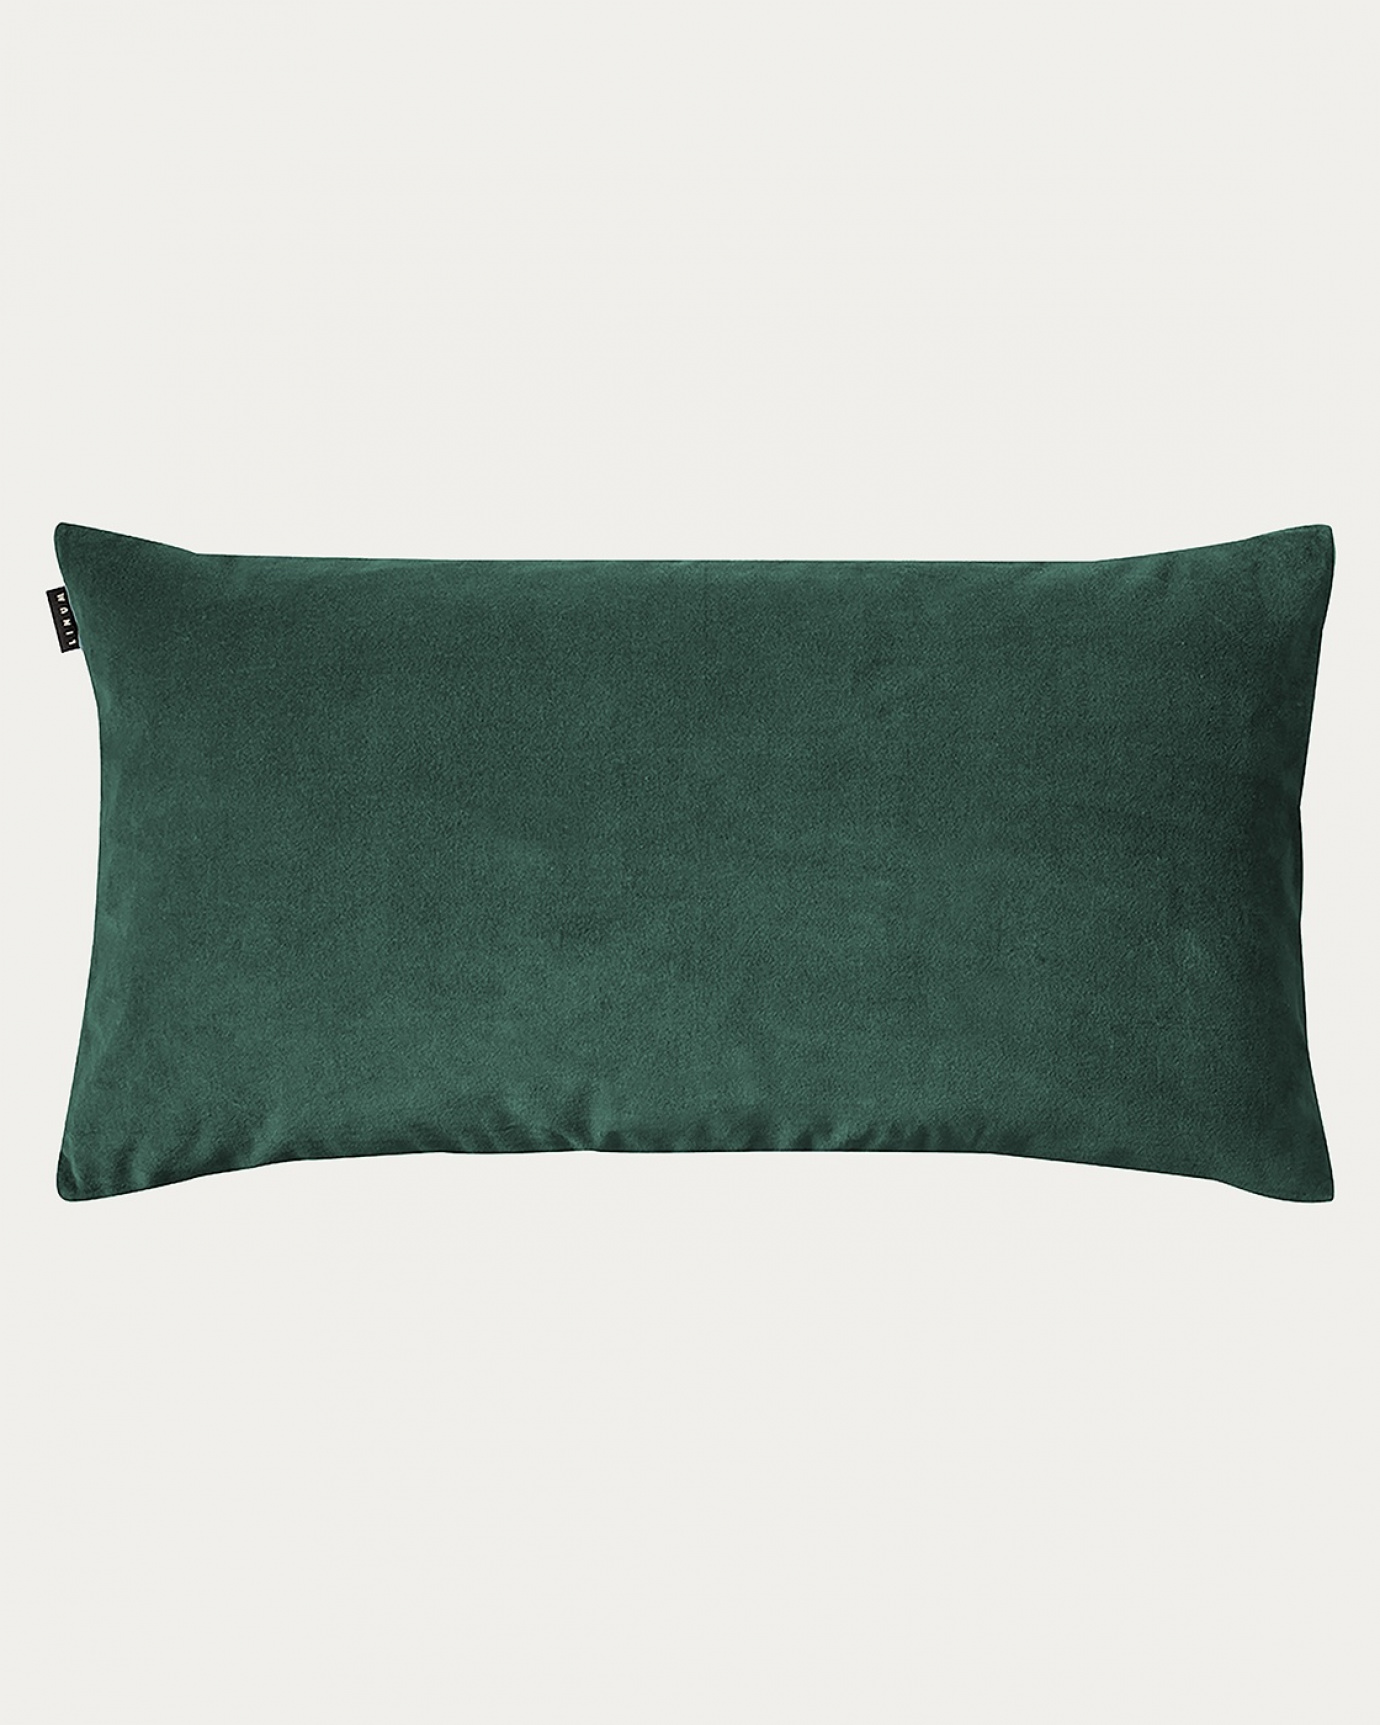 Produktbild djup smaragdgrön PAOLO kuddfodral av mjuk bomullssammet och 100% linne från LINUM DESIGN. Storlek 50x90 cm.